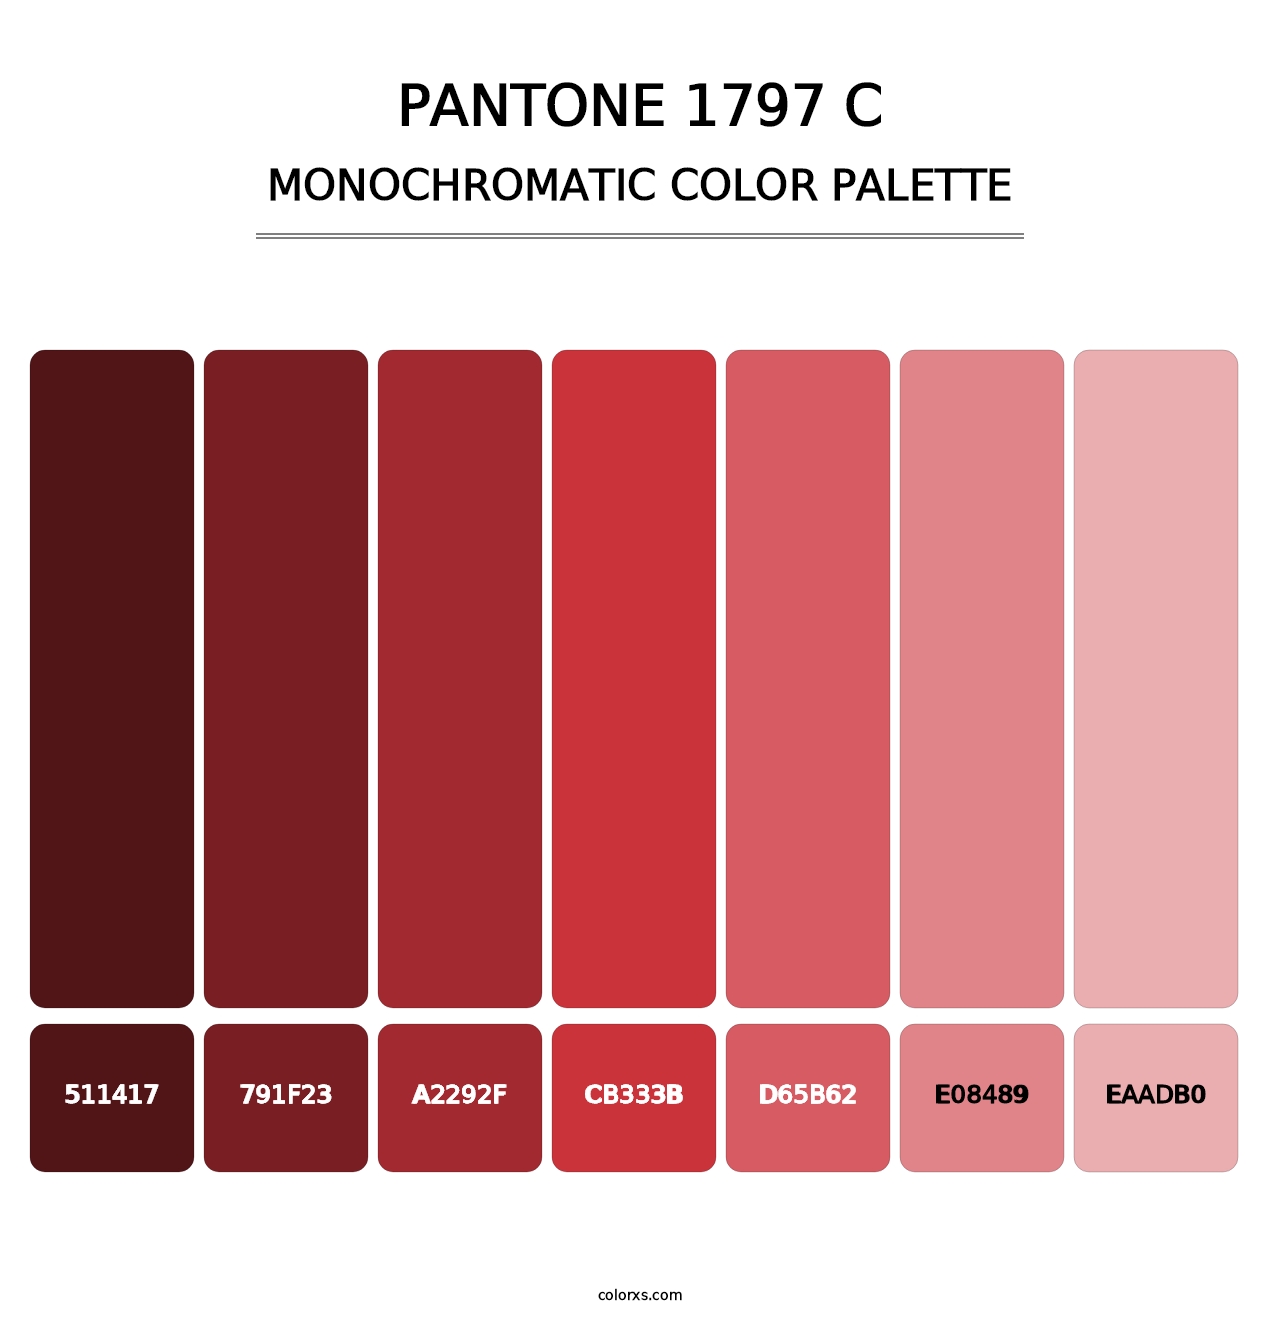 PANTONE 1797 C - Monochromatic Color Palette